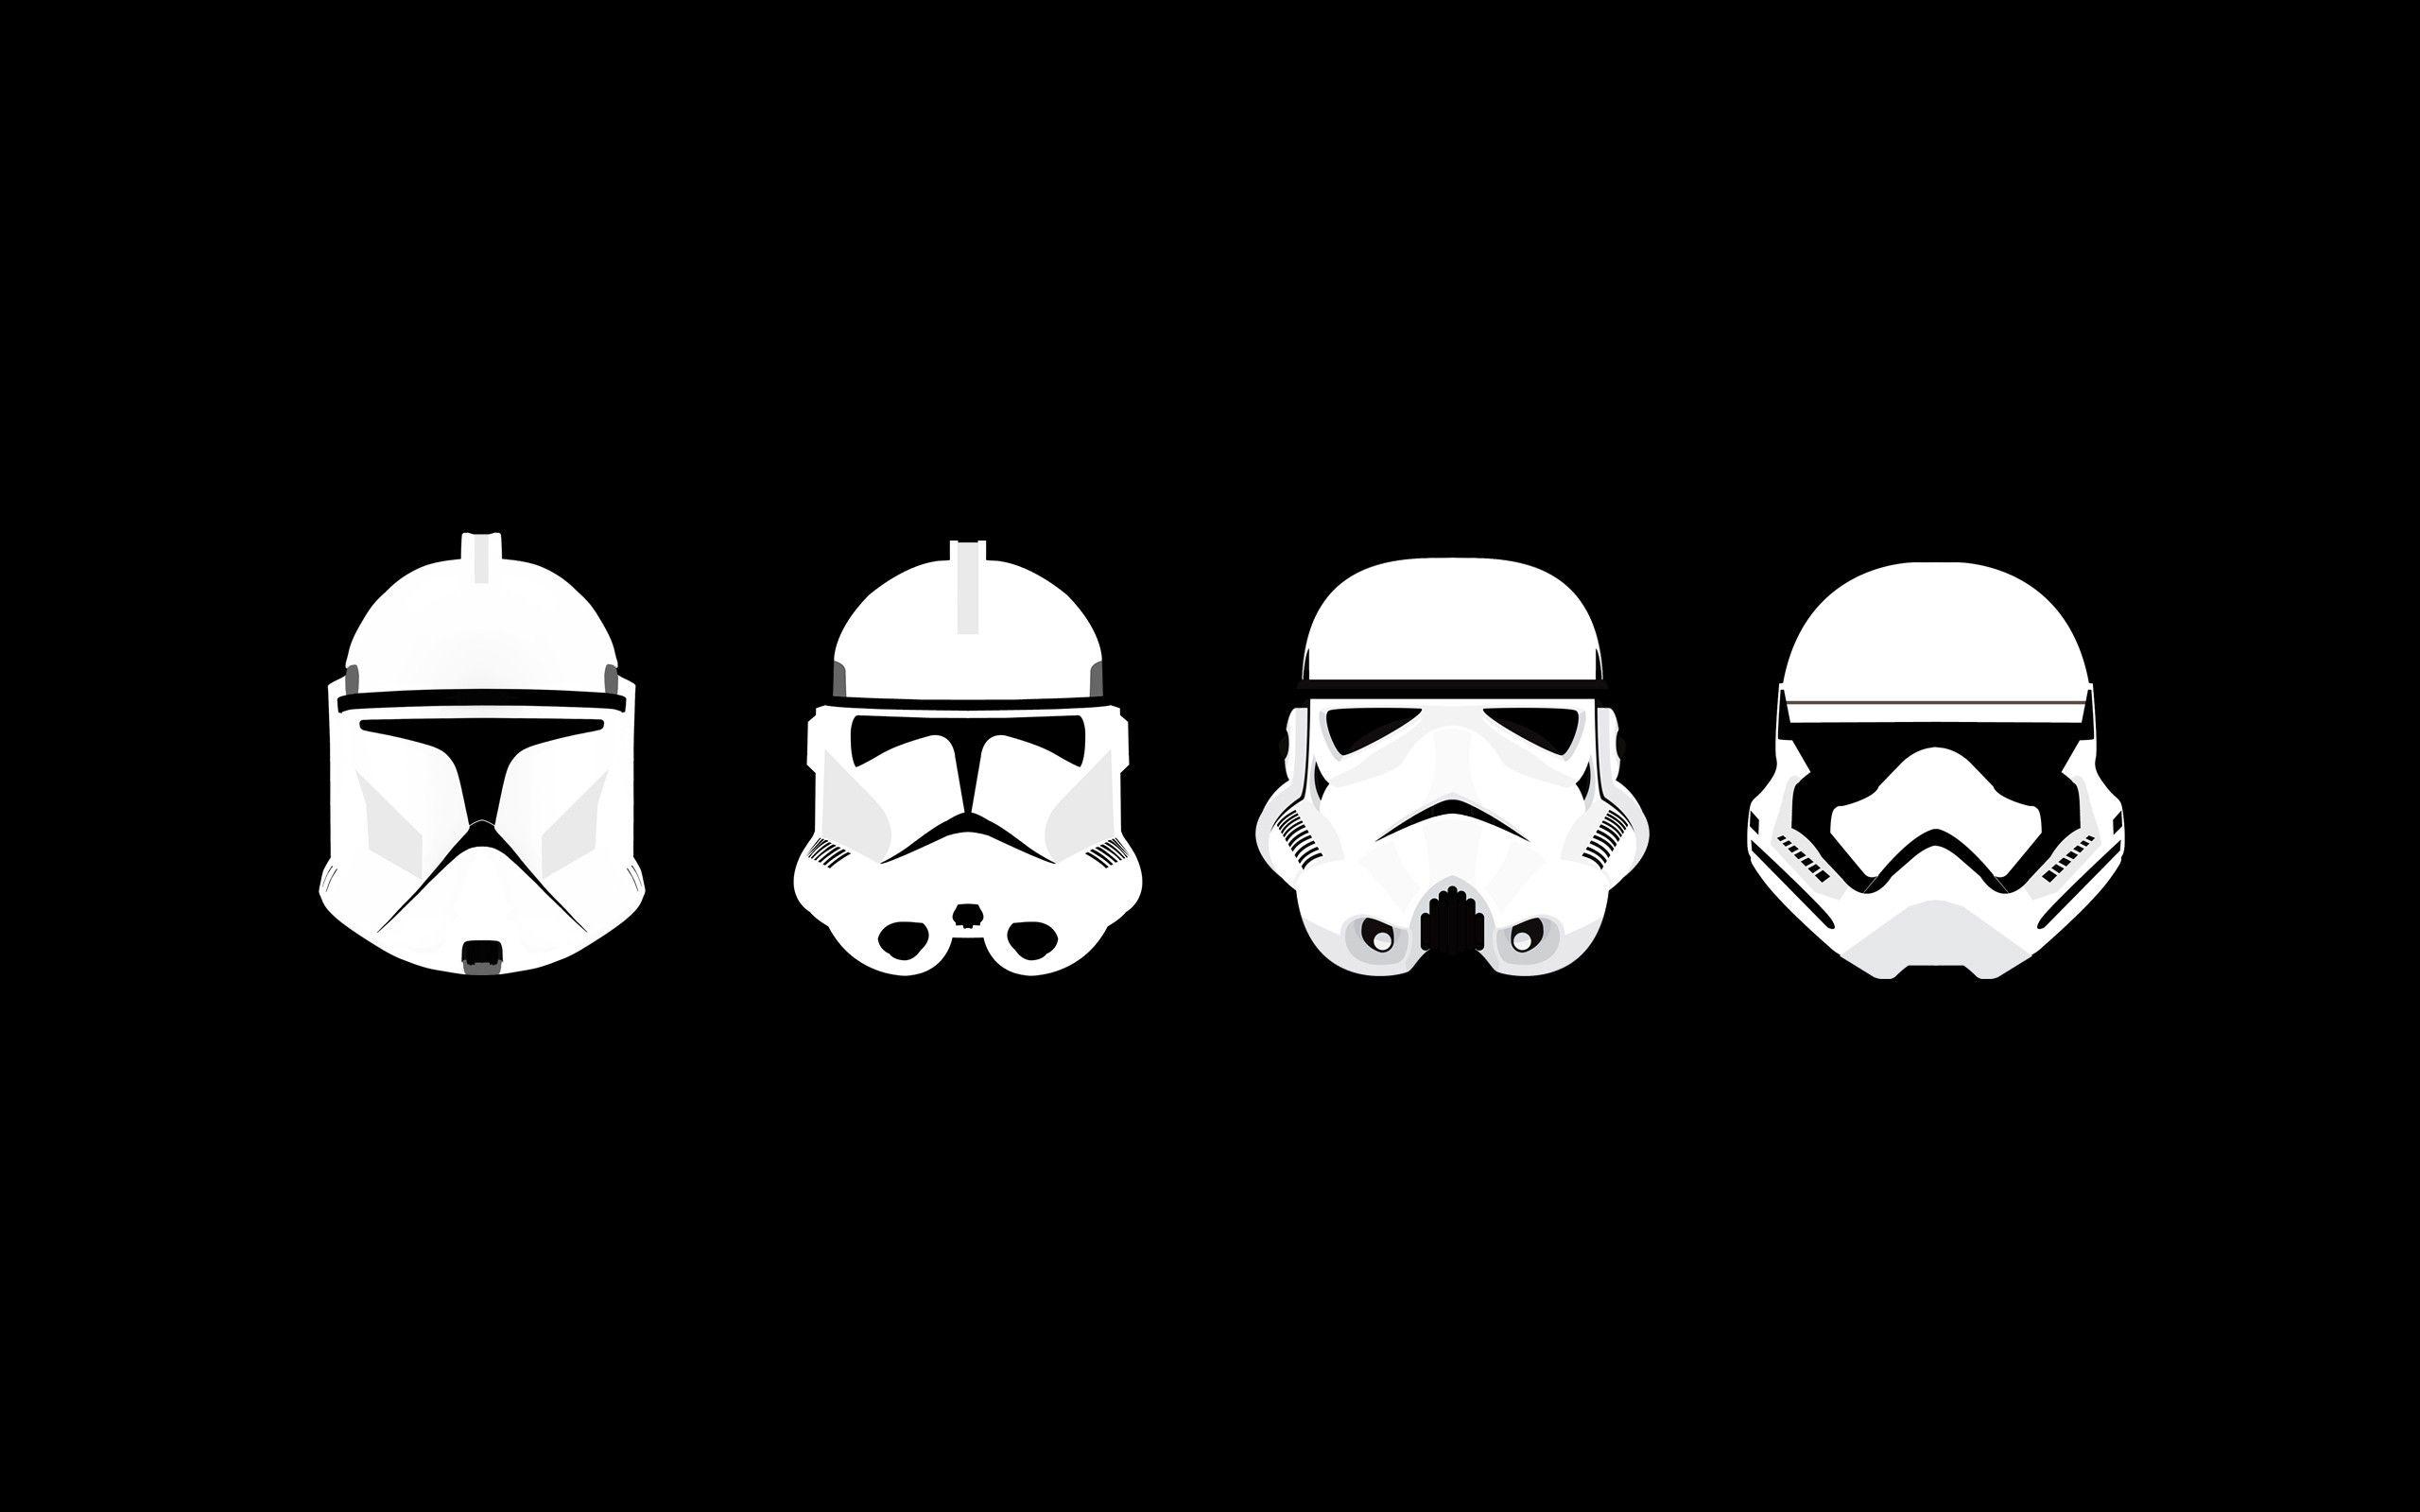 Stormtrooper Logo - Wallpaper : illustration, Star Wars, minimalism, text, logo, helmet ...